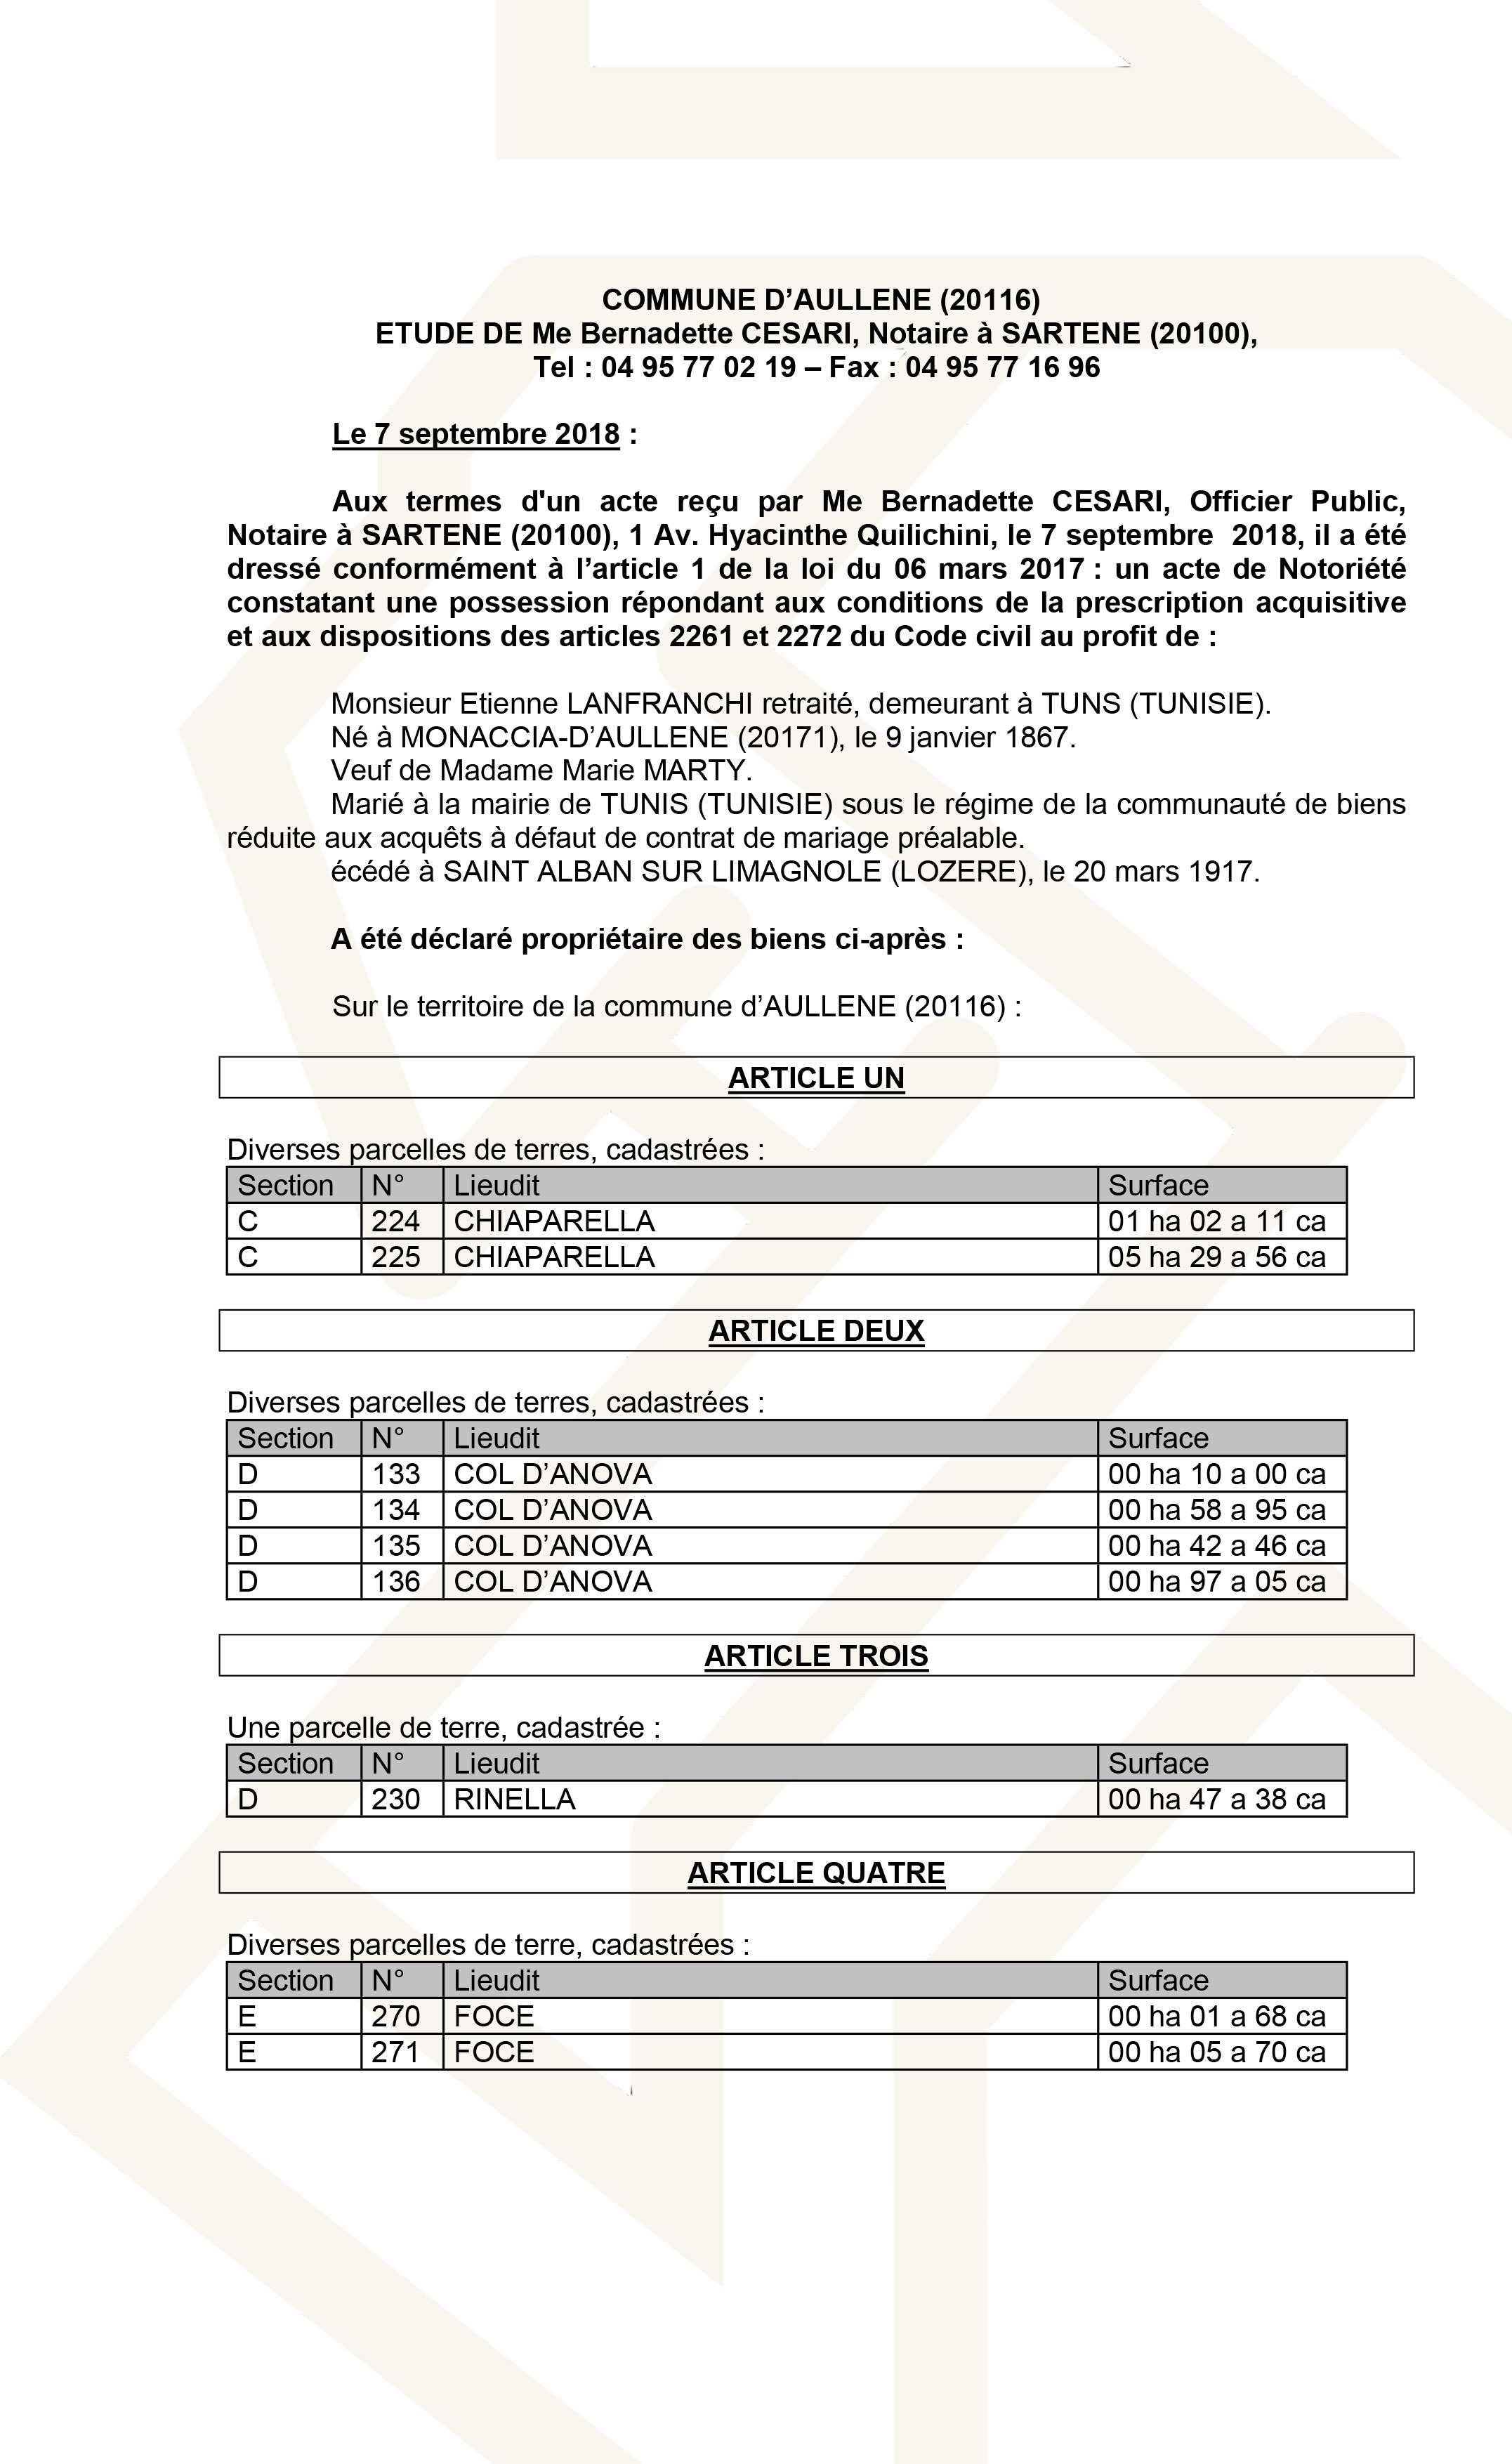 Avis de création de titre de propriété - commune d'Aullène (Corse du Sud)